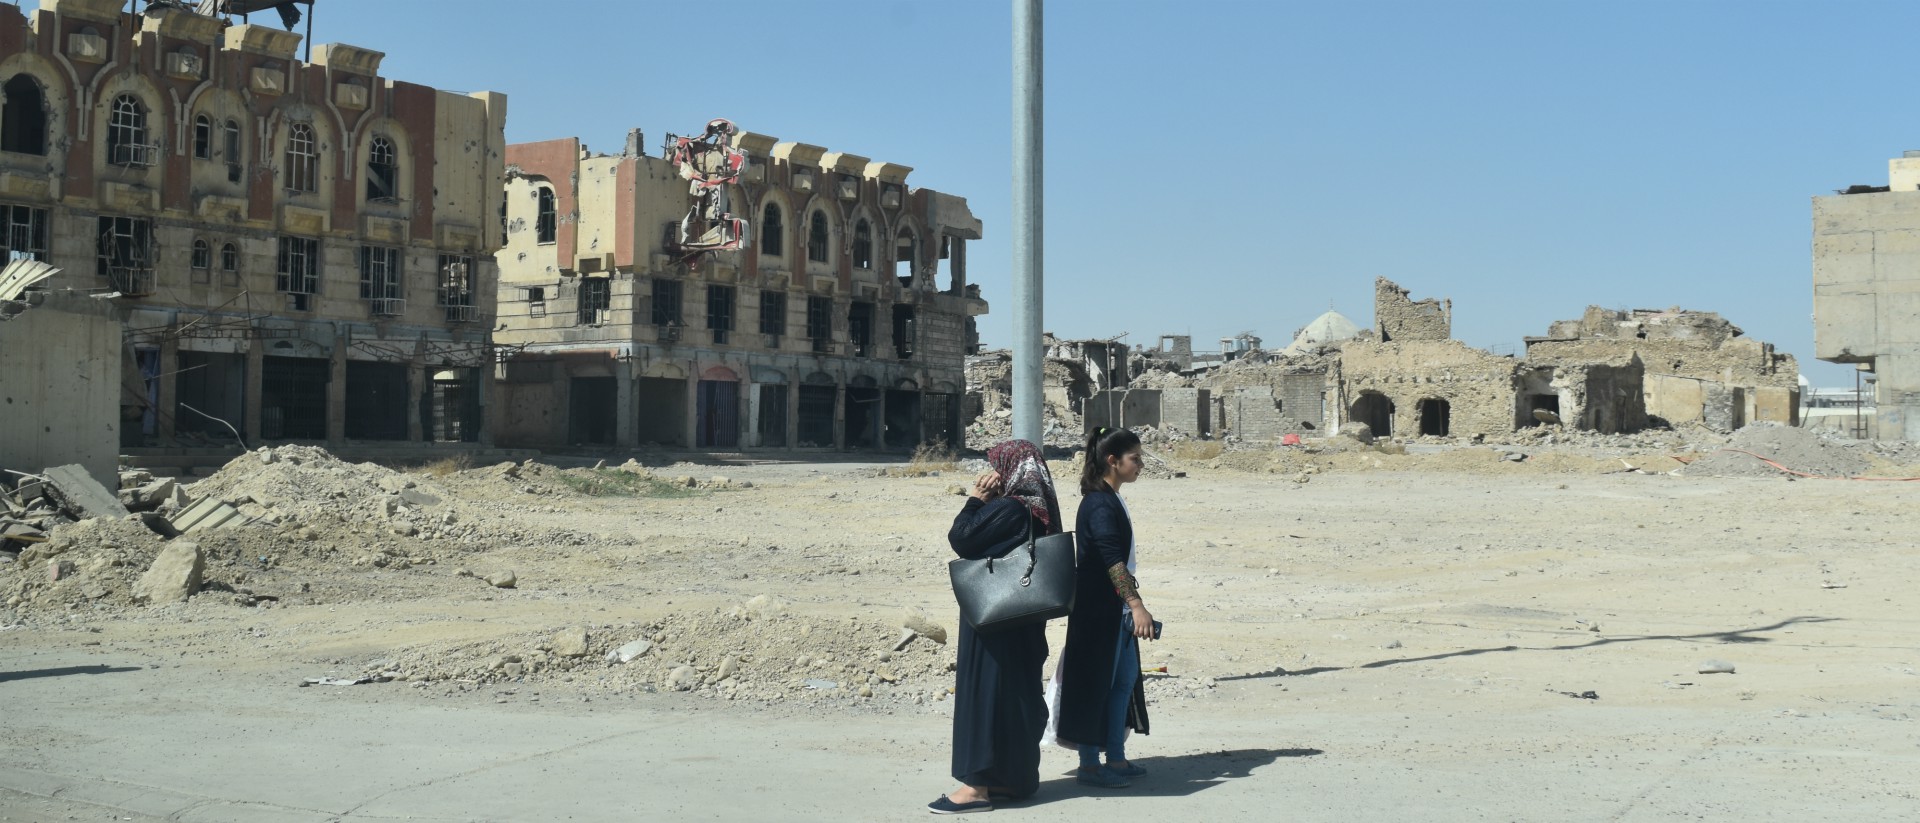 Dans les ruines de Mossoul, Mgr Najeeb Michaeel veut redonner confiance aux chrétiens en créant des ponts avec les musulmans  | © Jacques Berset